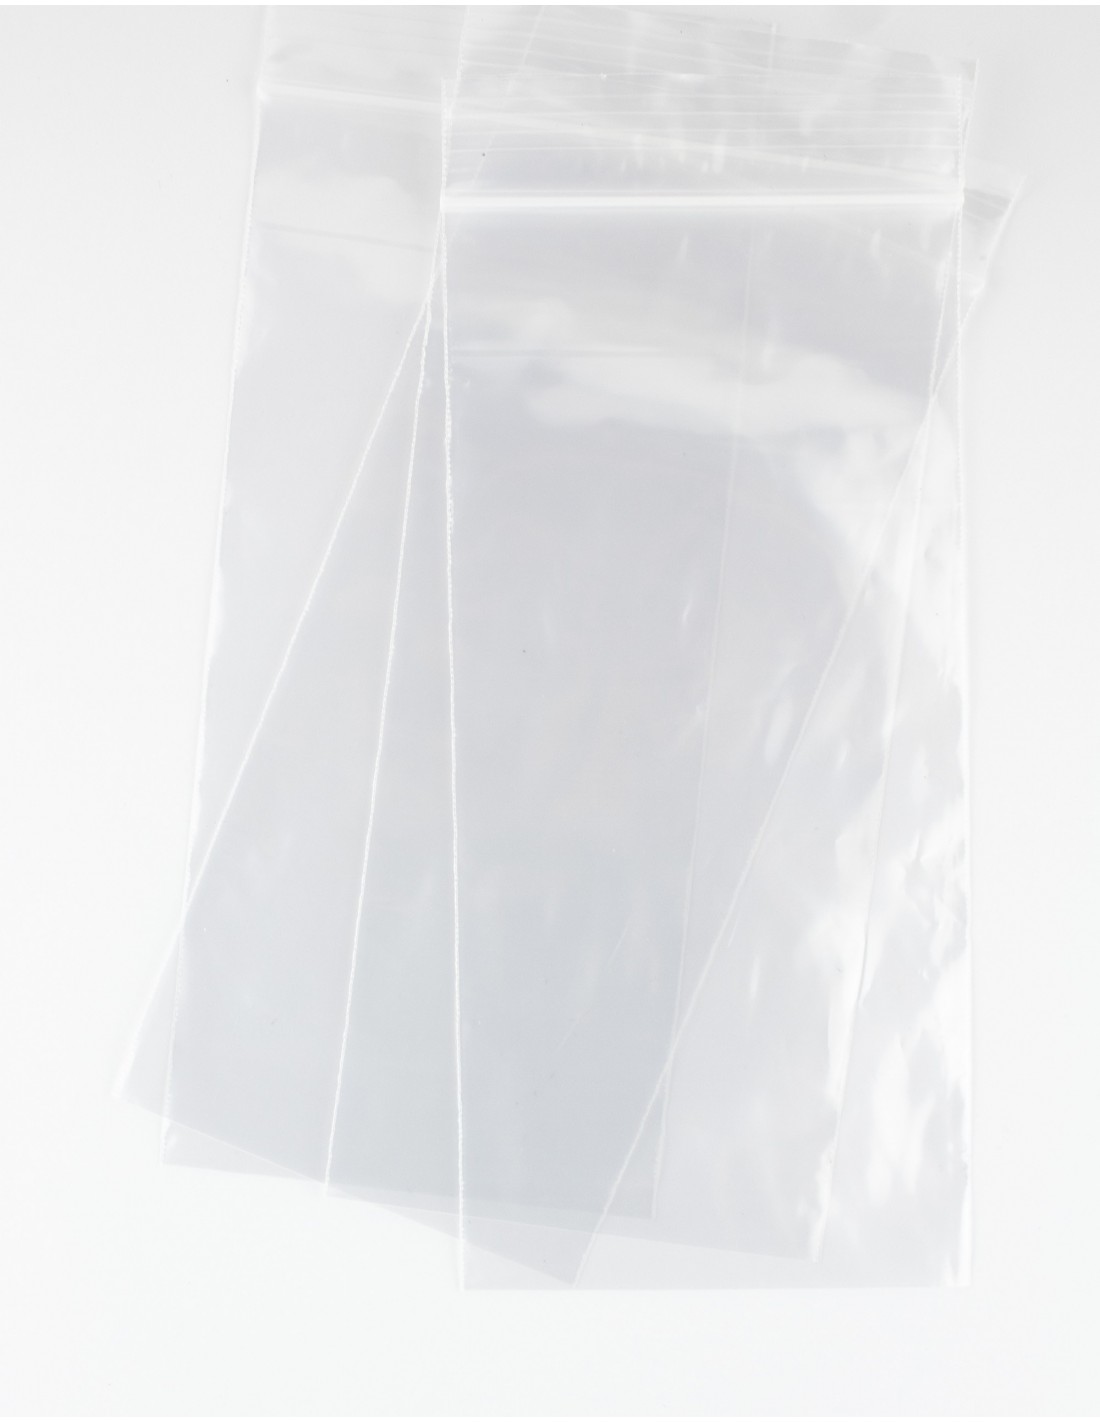 Bolsas con Autocierre Zip transparentes de 6 x 20 cm